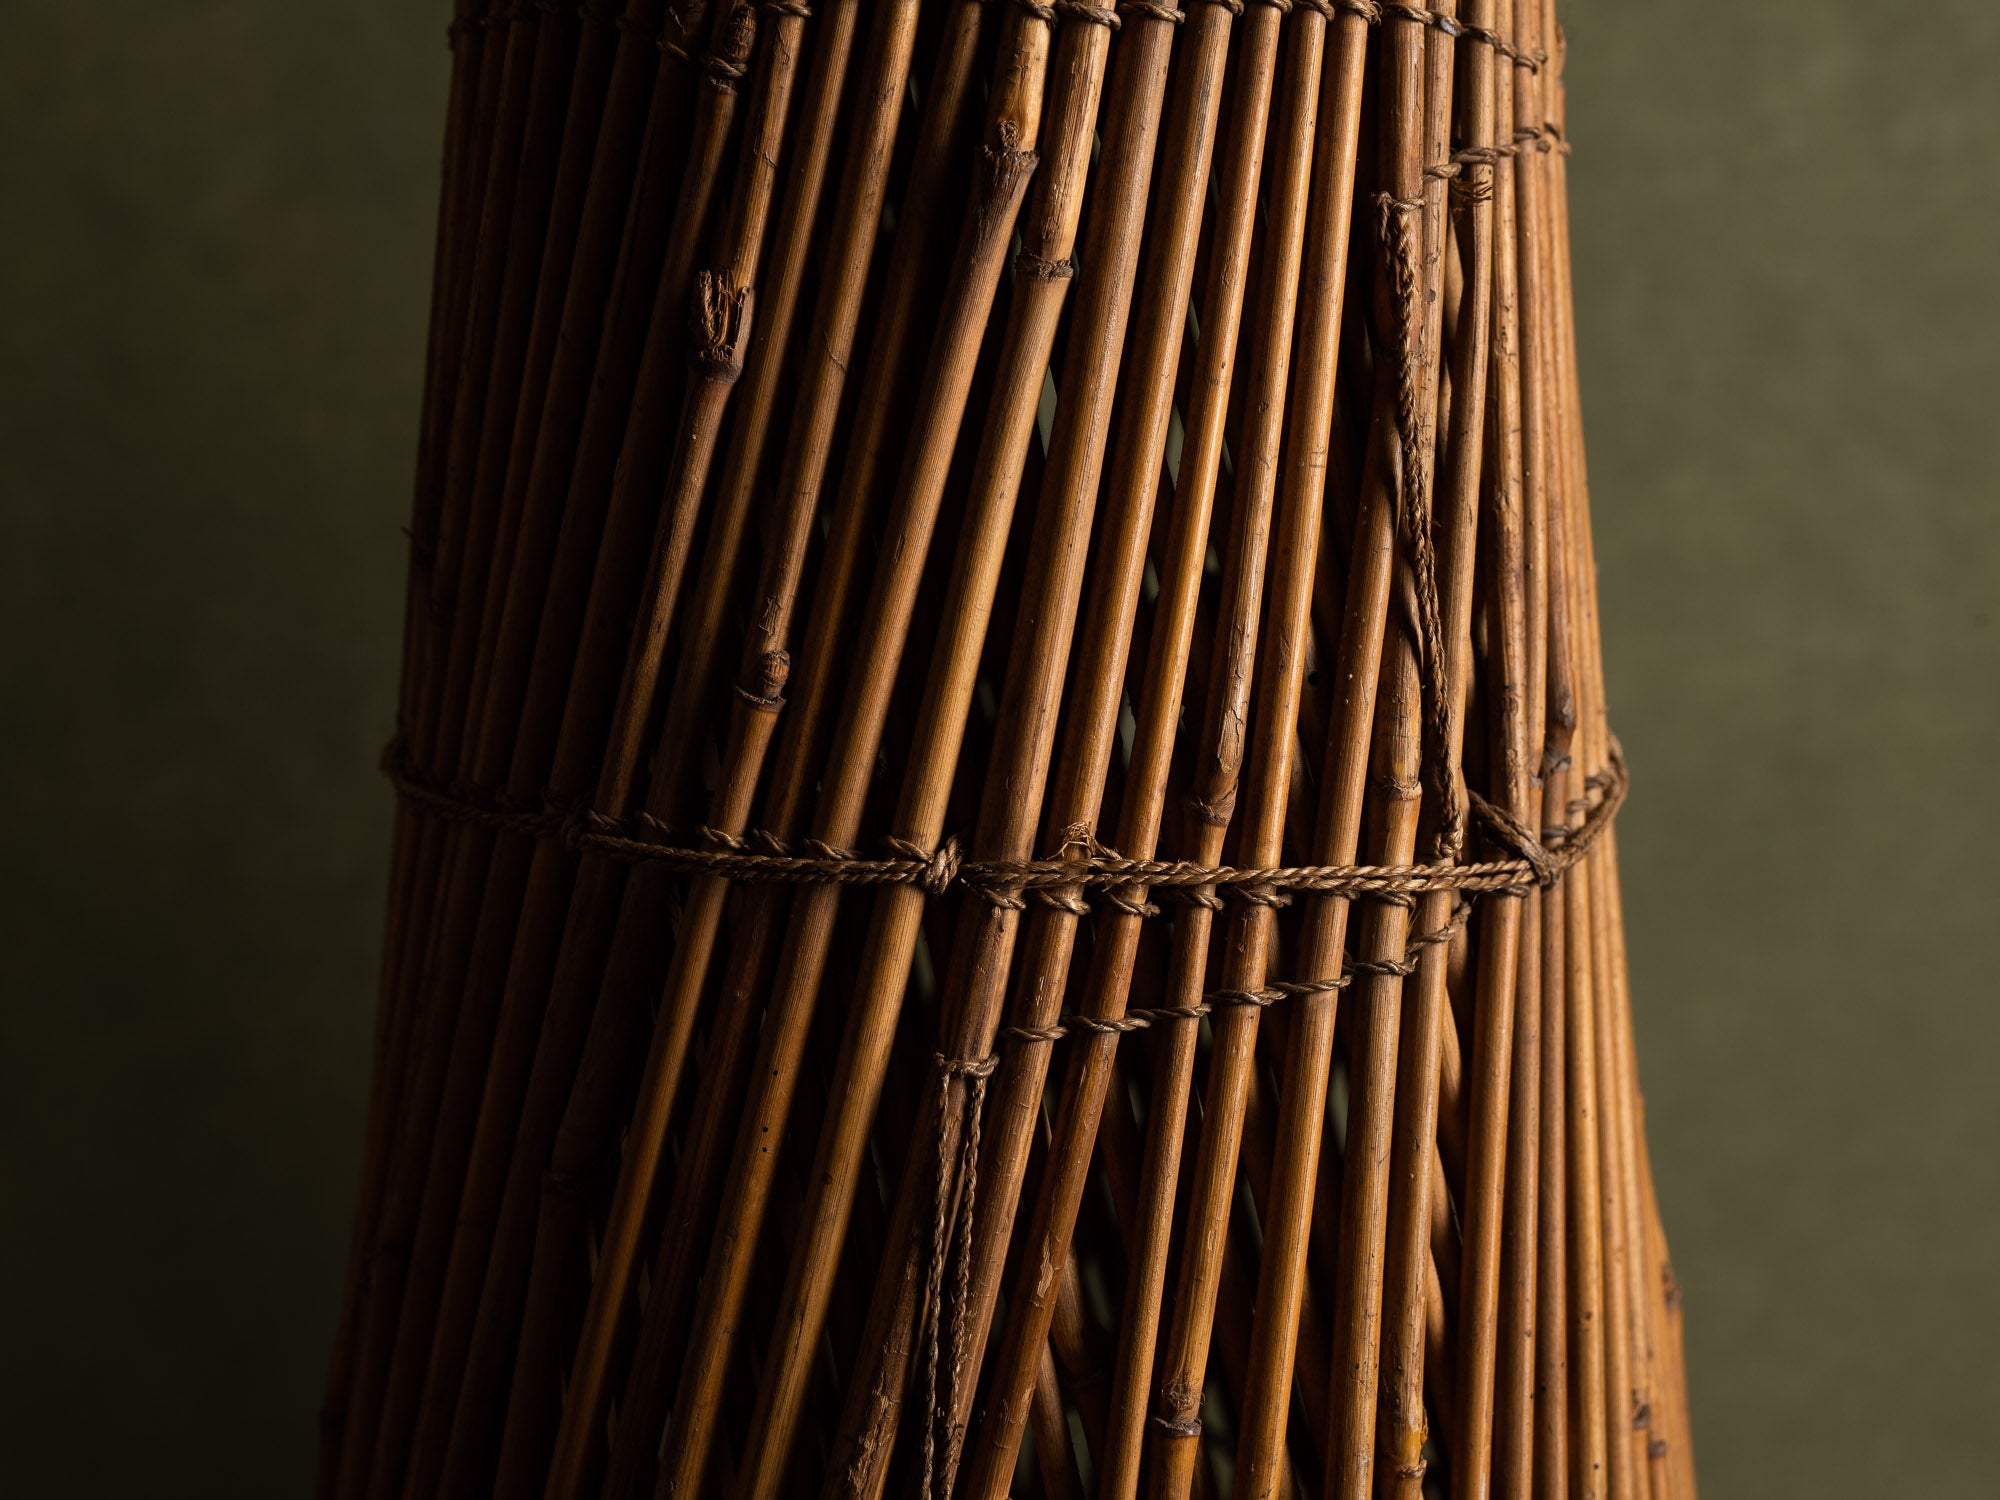 Rares nasses à poisson en vannerie de la vallée du Logone, Tchad (milieu du XXe siècle)..Rare basketwork fish traps from Logone Valley, Chad (mid 20th century)